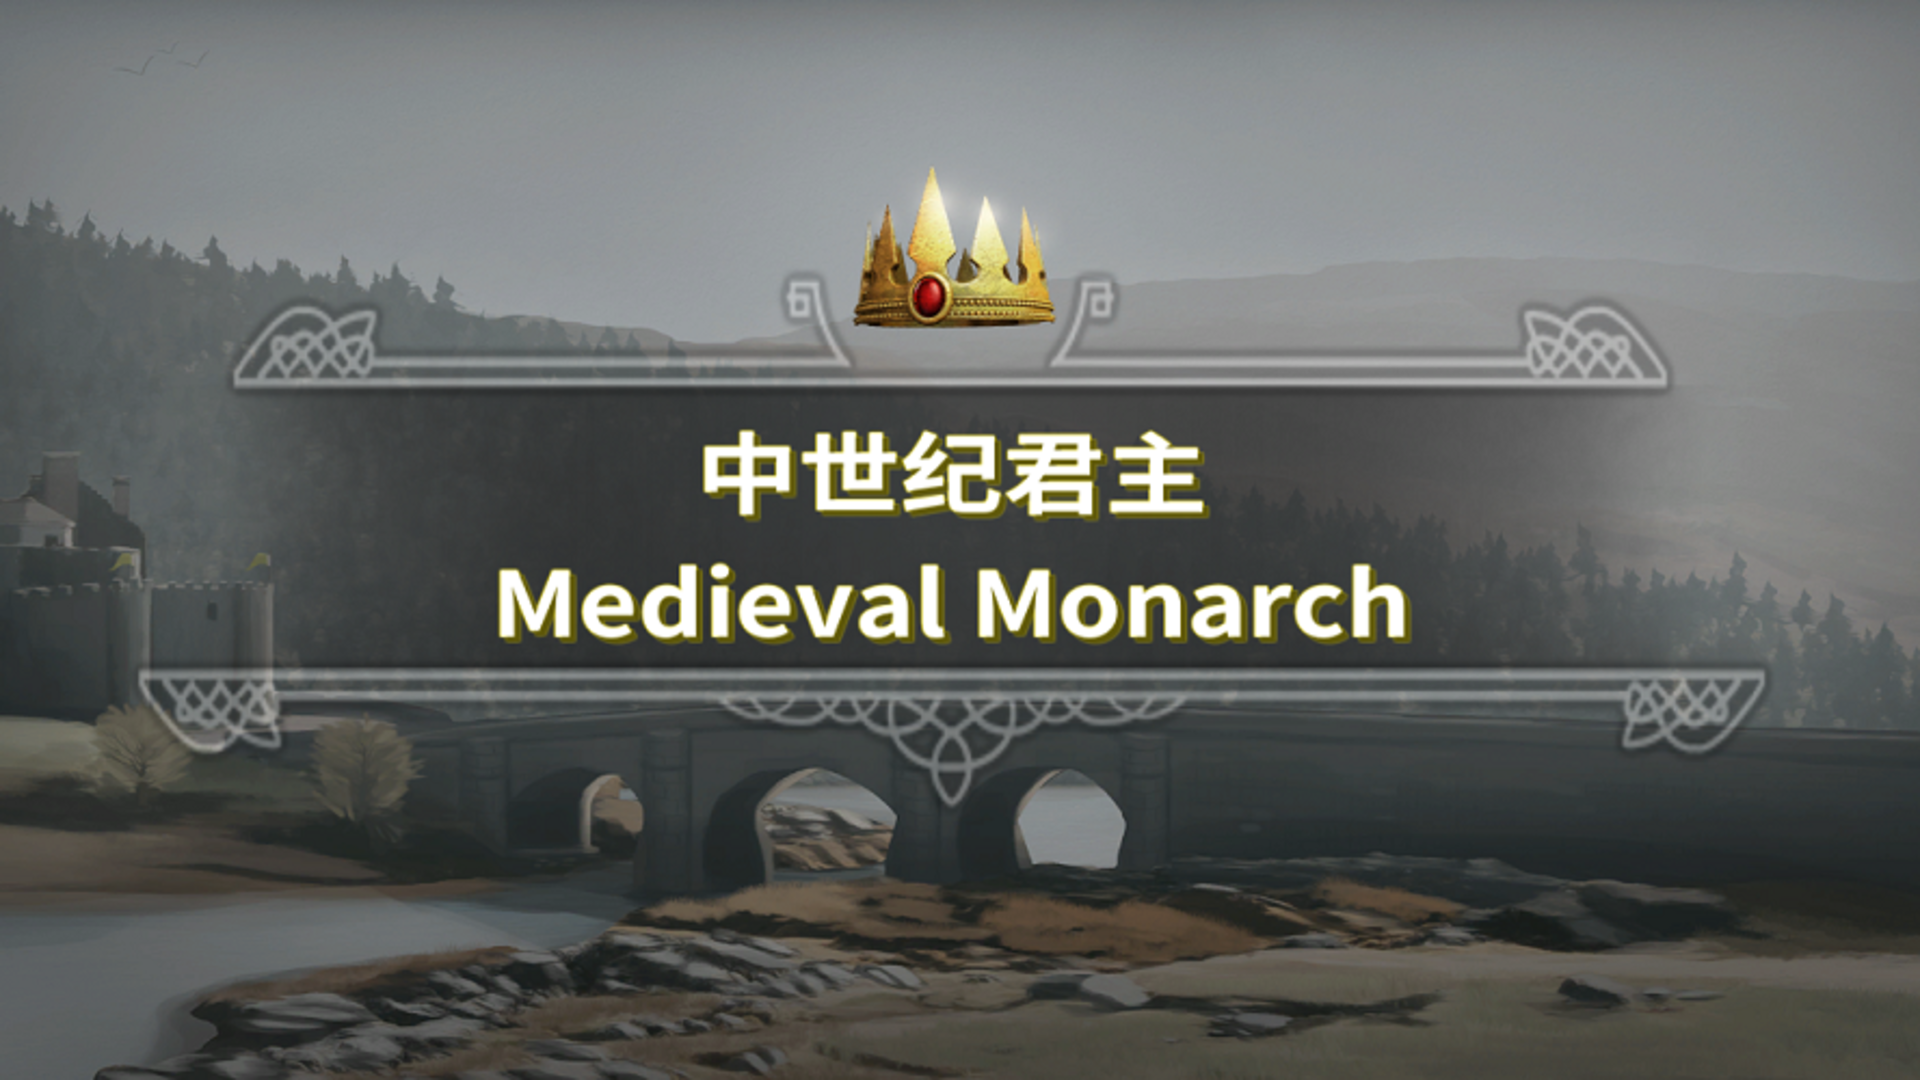 Banner of medyebal na monarko 